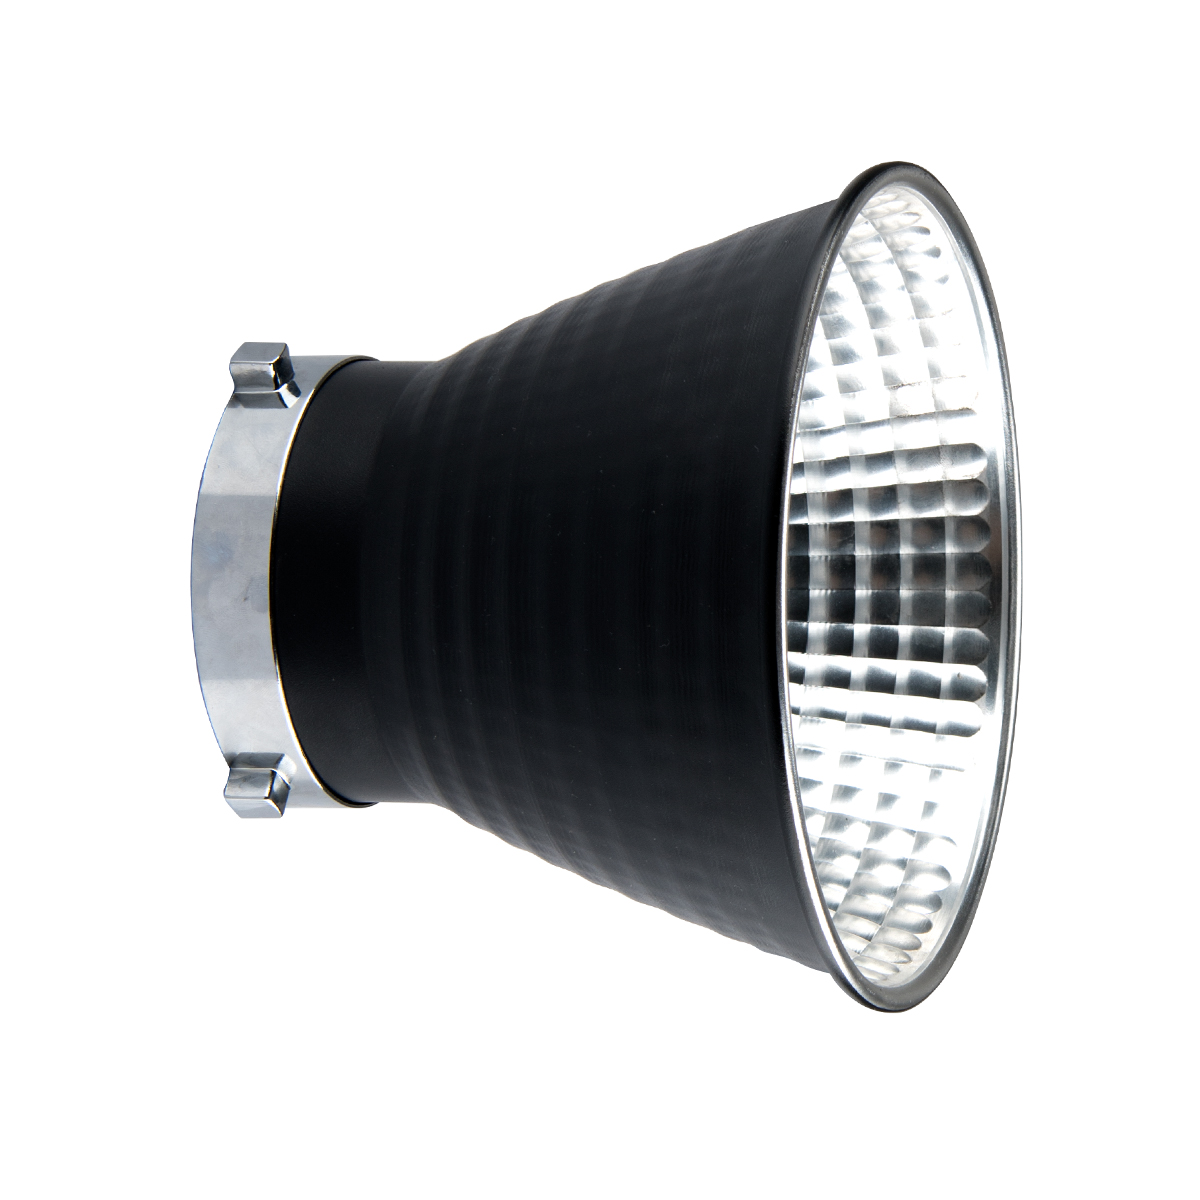 картинка Осветитель светодиодный Godox VL300 (без пульта) из Светодиодные LED осветители от магазина Mif-Bond